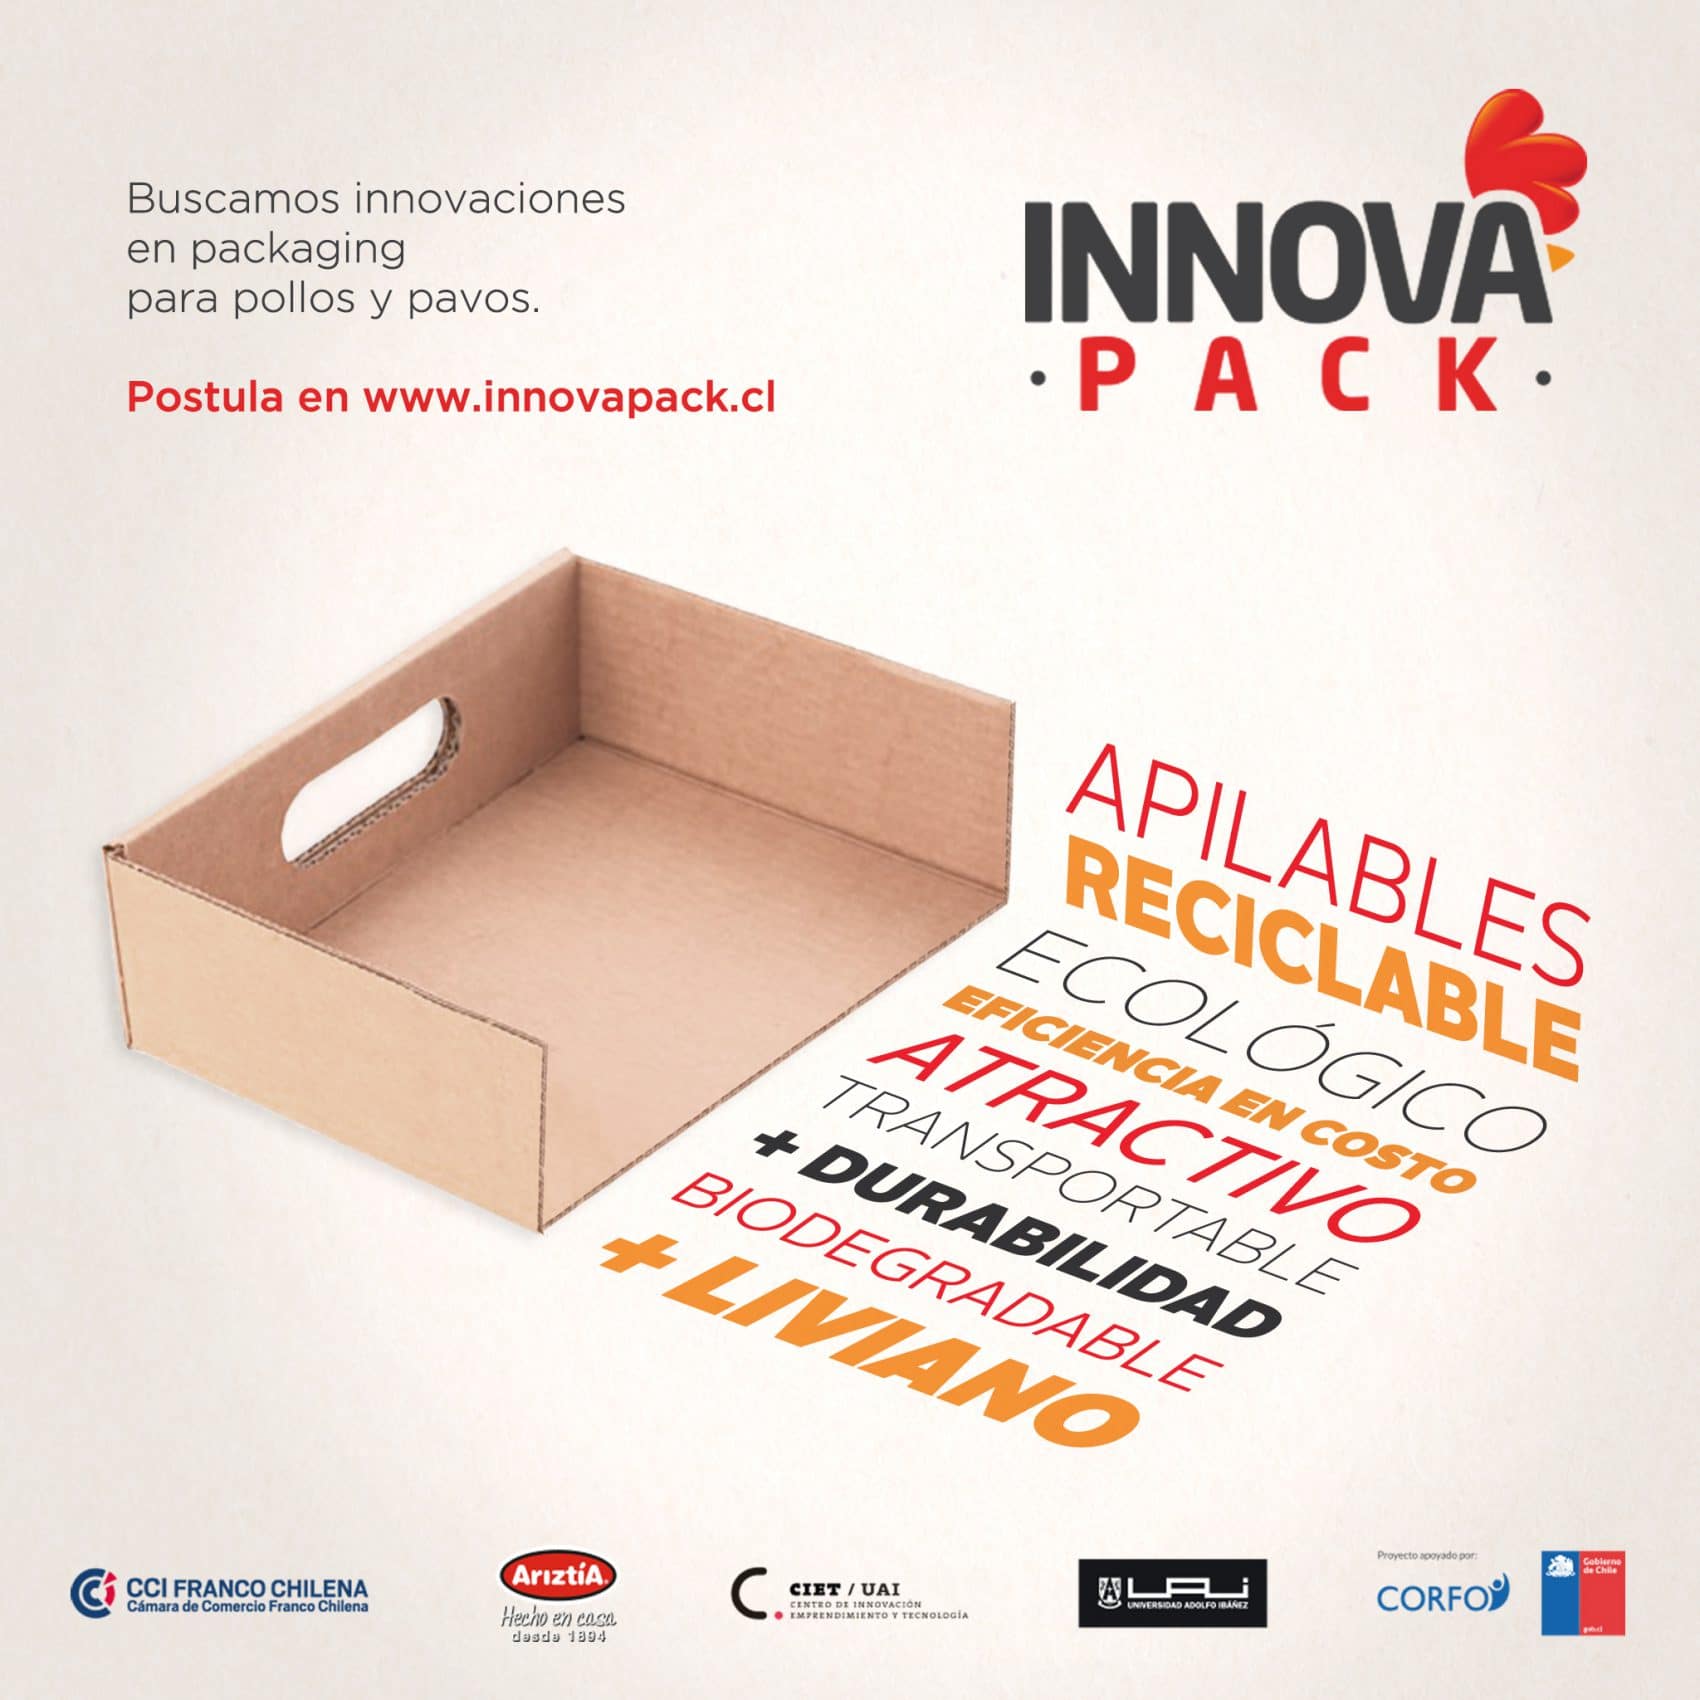 InnovaPack: el concurso que busca emprendedores innovadores, competitivos y sustentables para el packaging de pollos y pavos frescos   